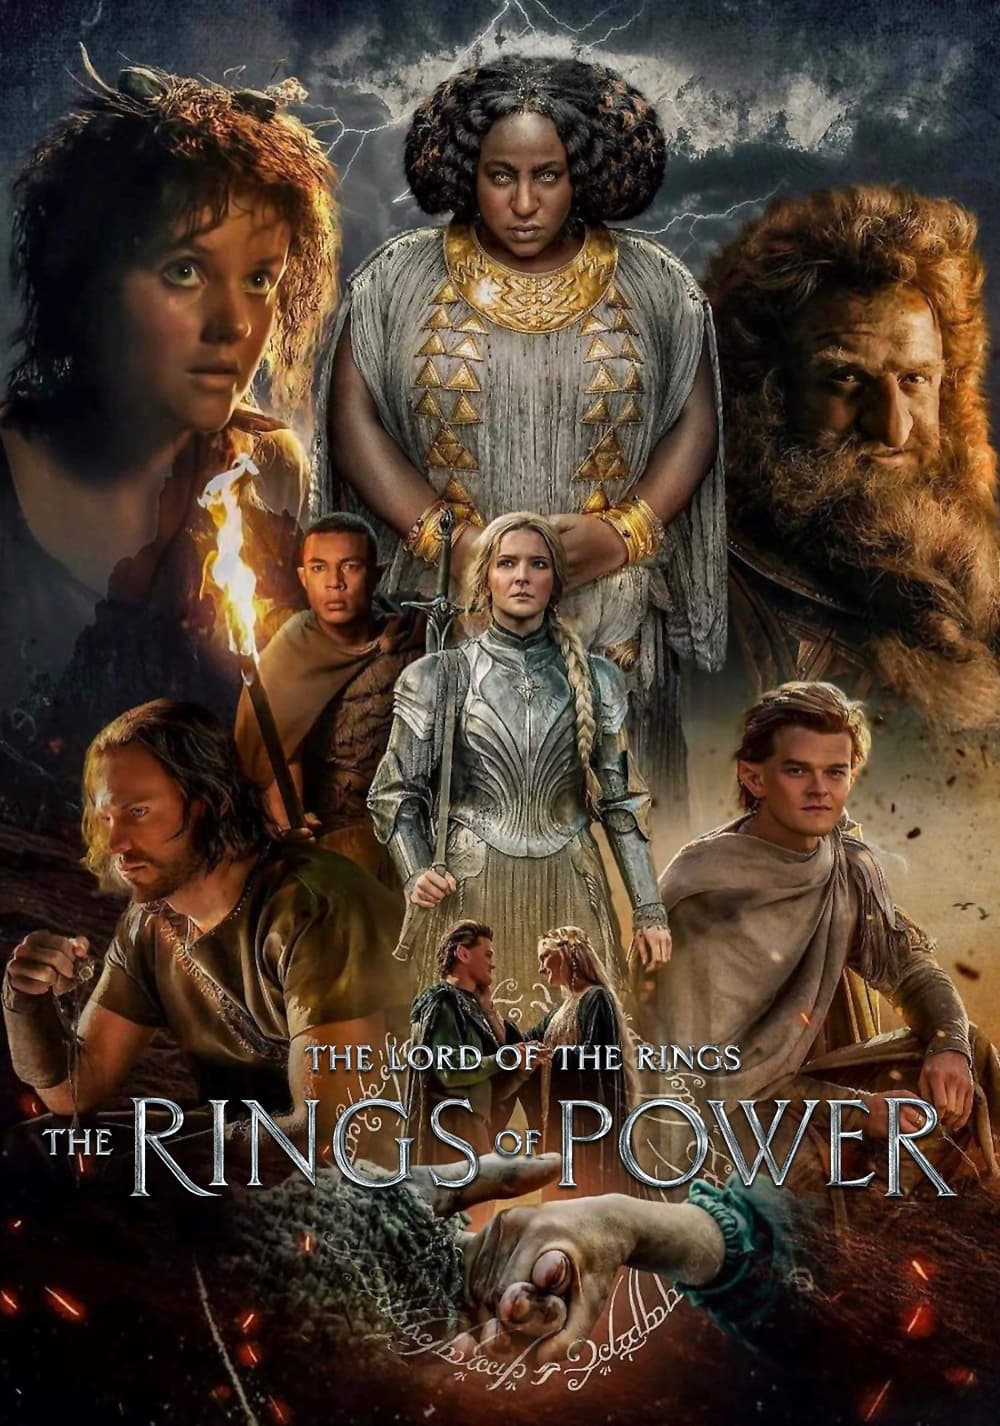 เดอะลอร์ดออฟเดอะริงส์ แหวนแห่งอำนาจ The Lord of the Rings: The Rings of Power